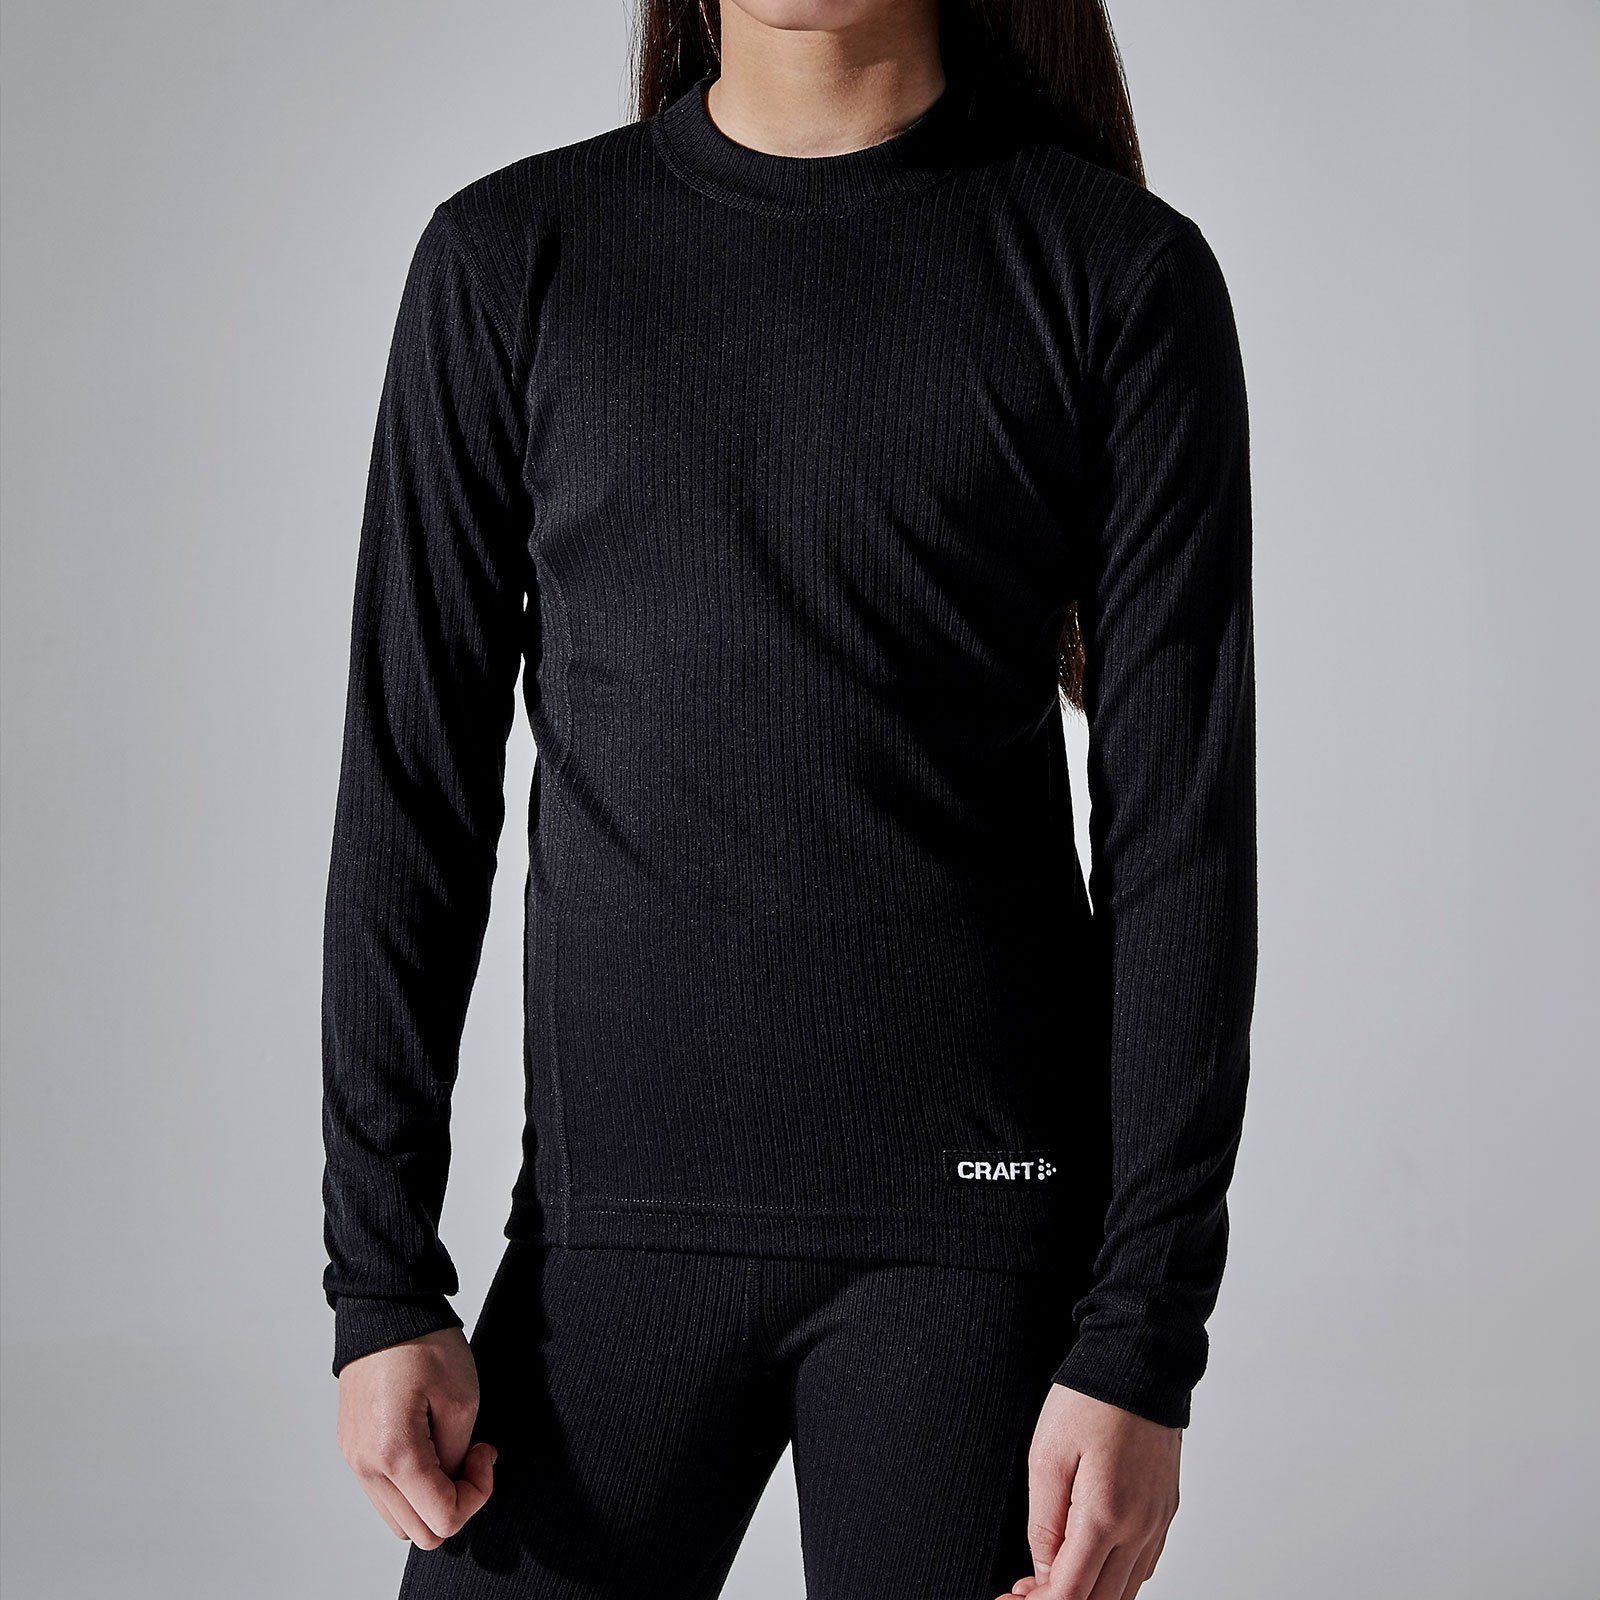 Craft Thermounterhemd Dry Core black mit Quick Junior Set Dry Baselayer Eigenschaften 999000